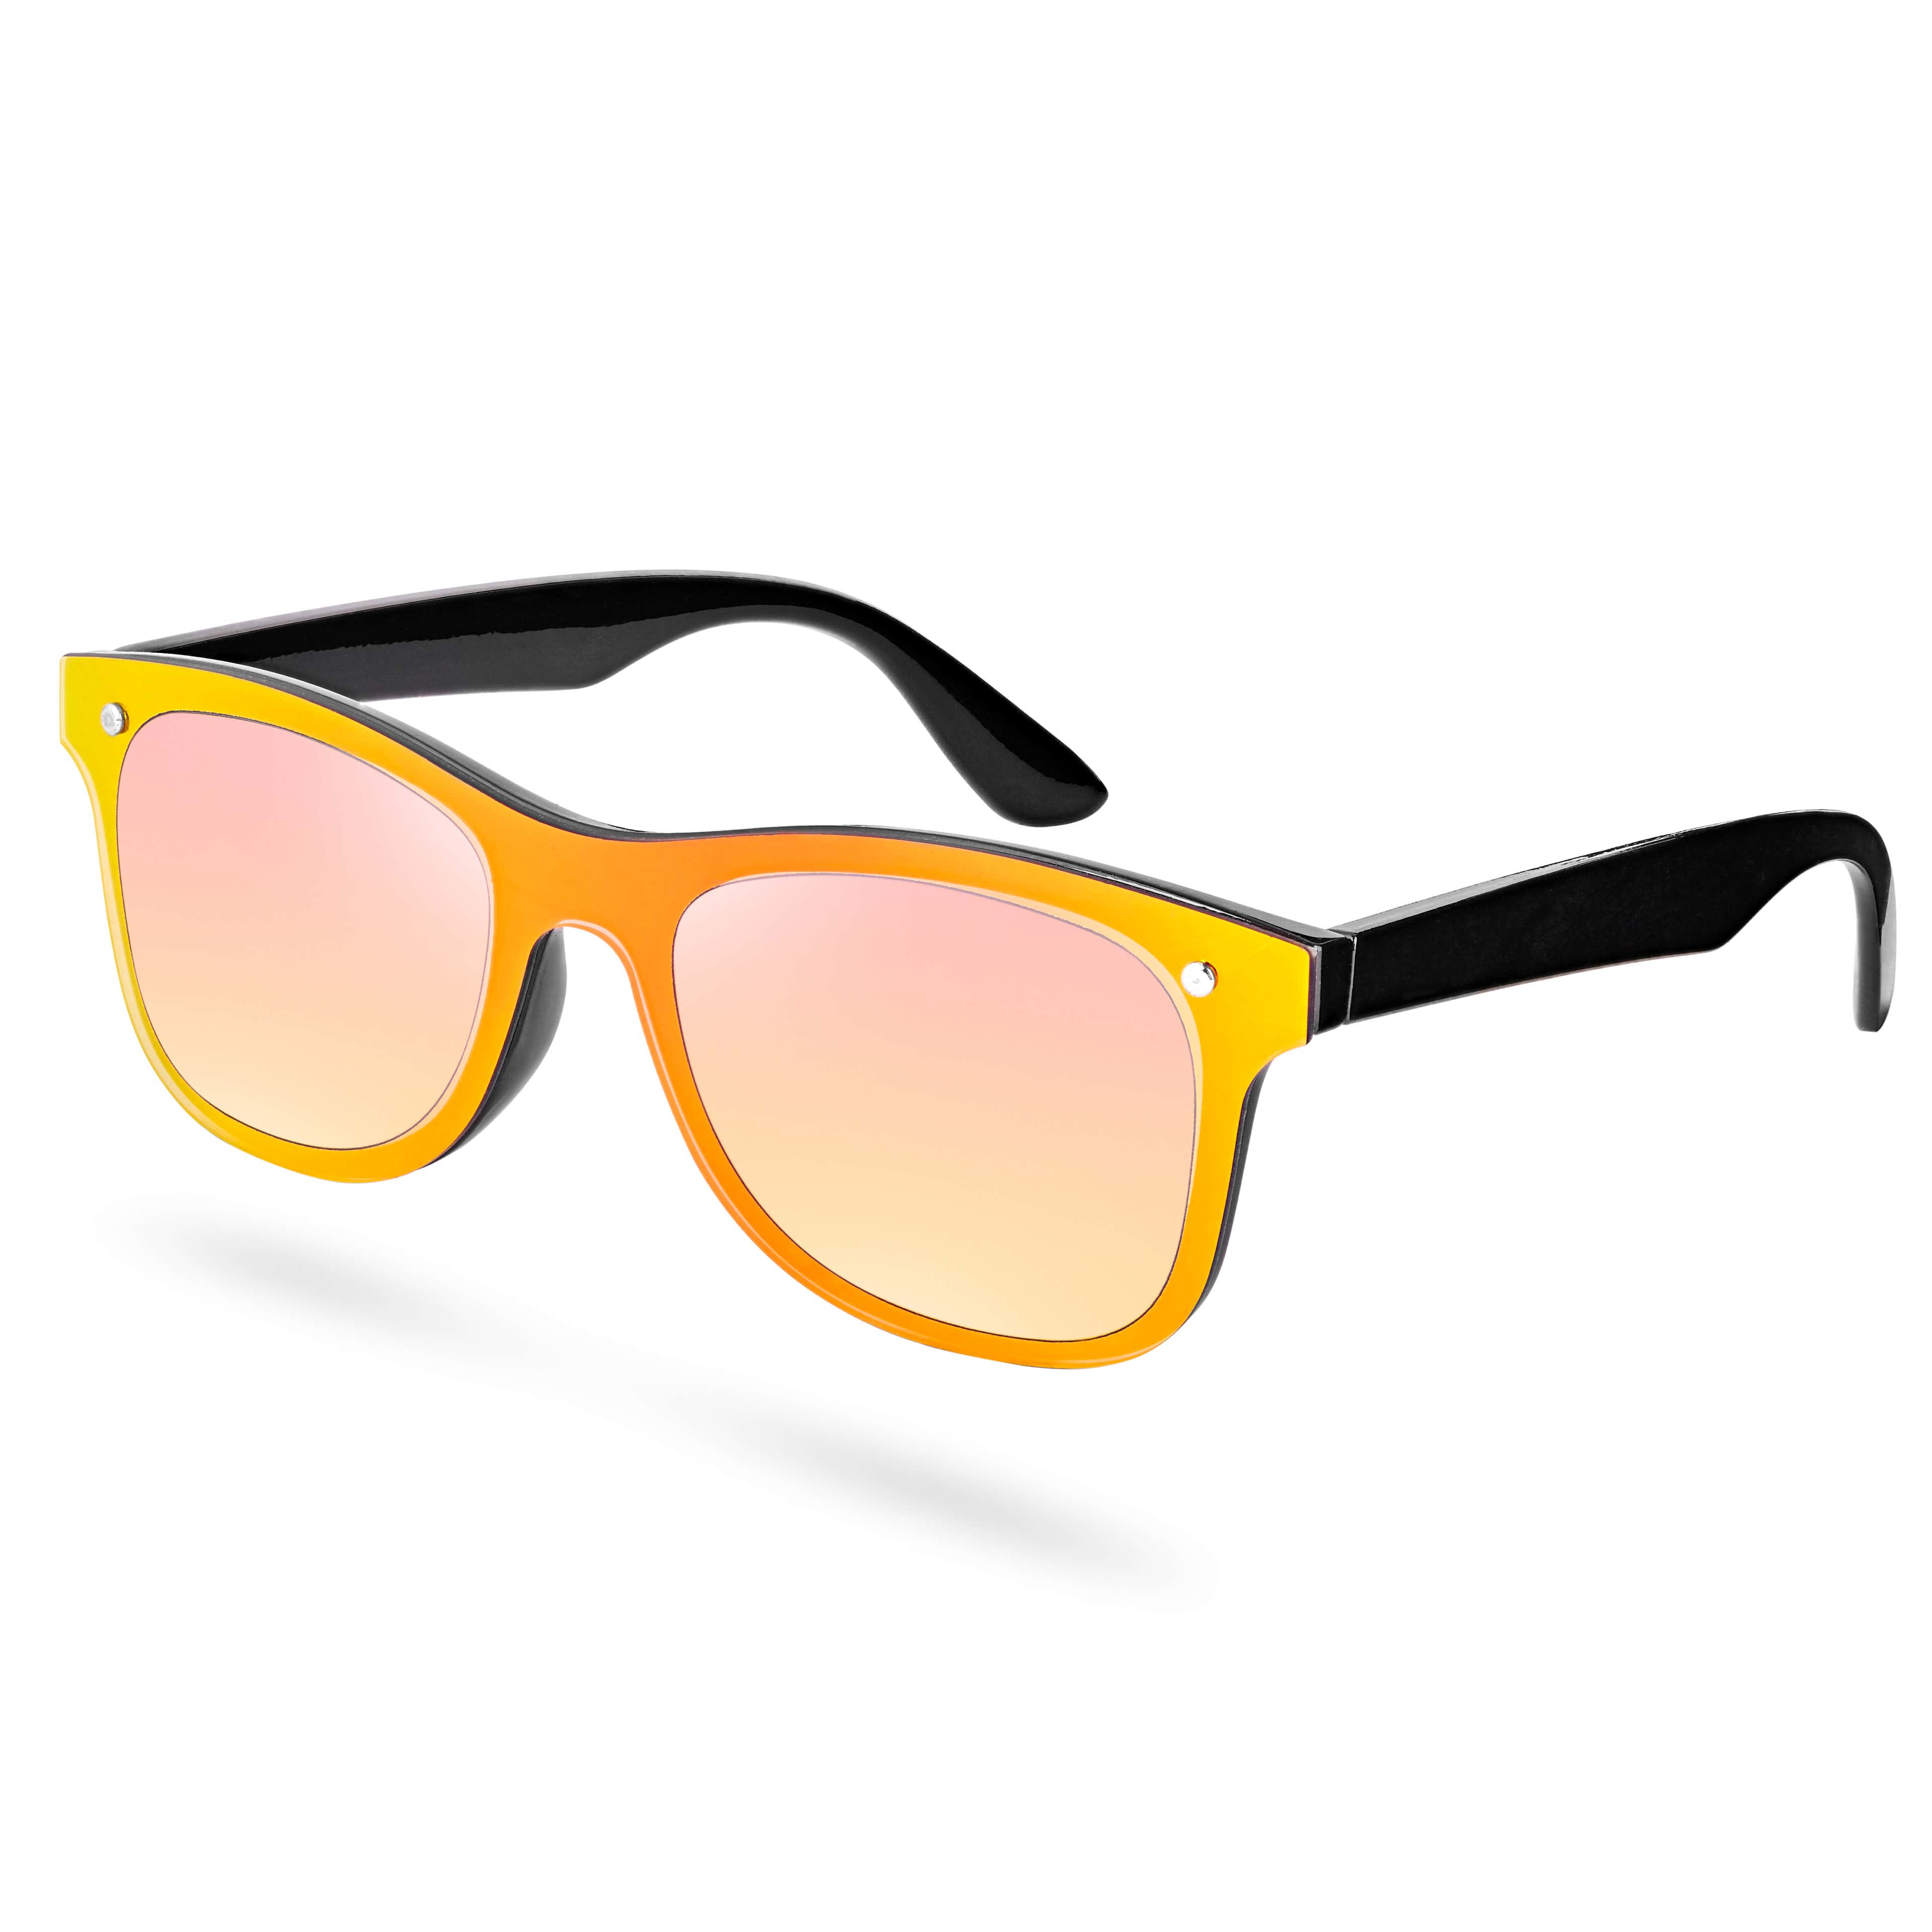 Sluneční brýle s žluto-černými obroučkami 